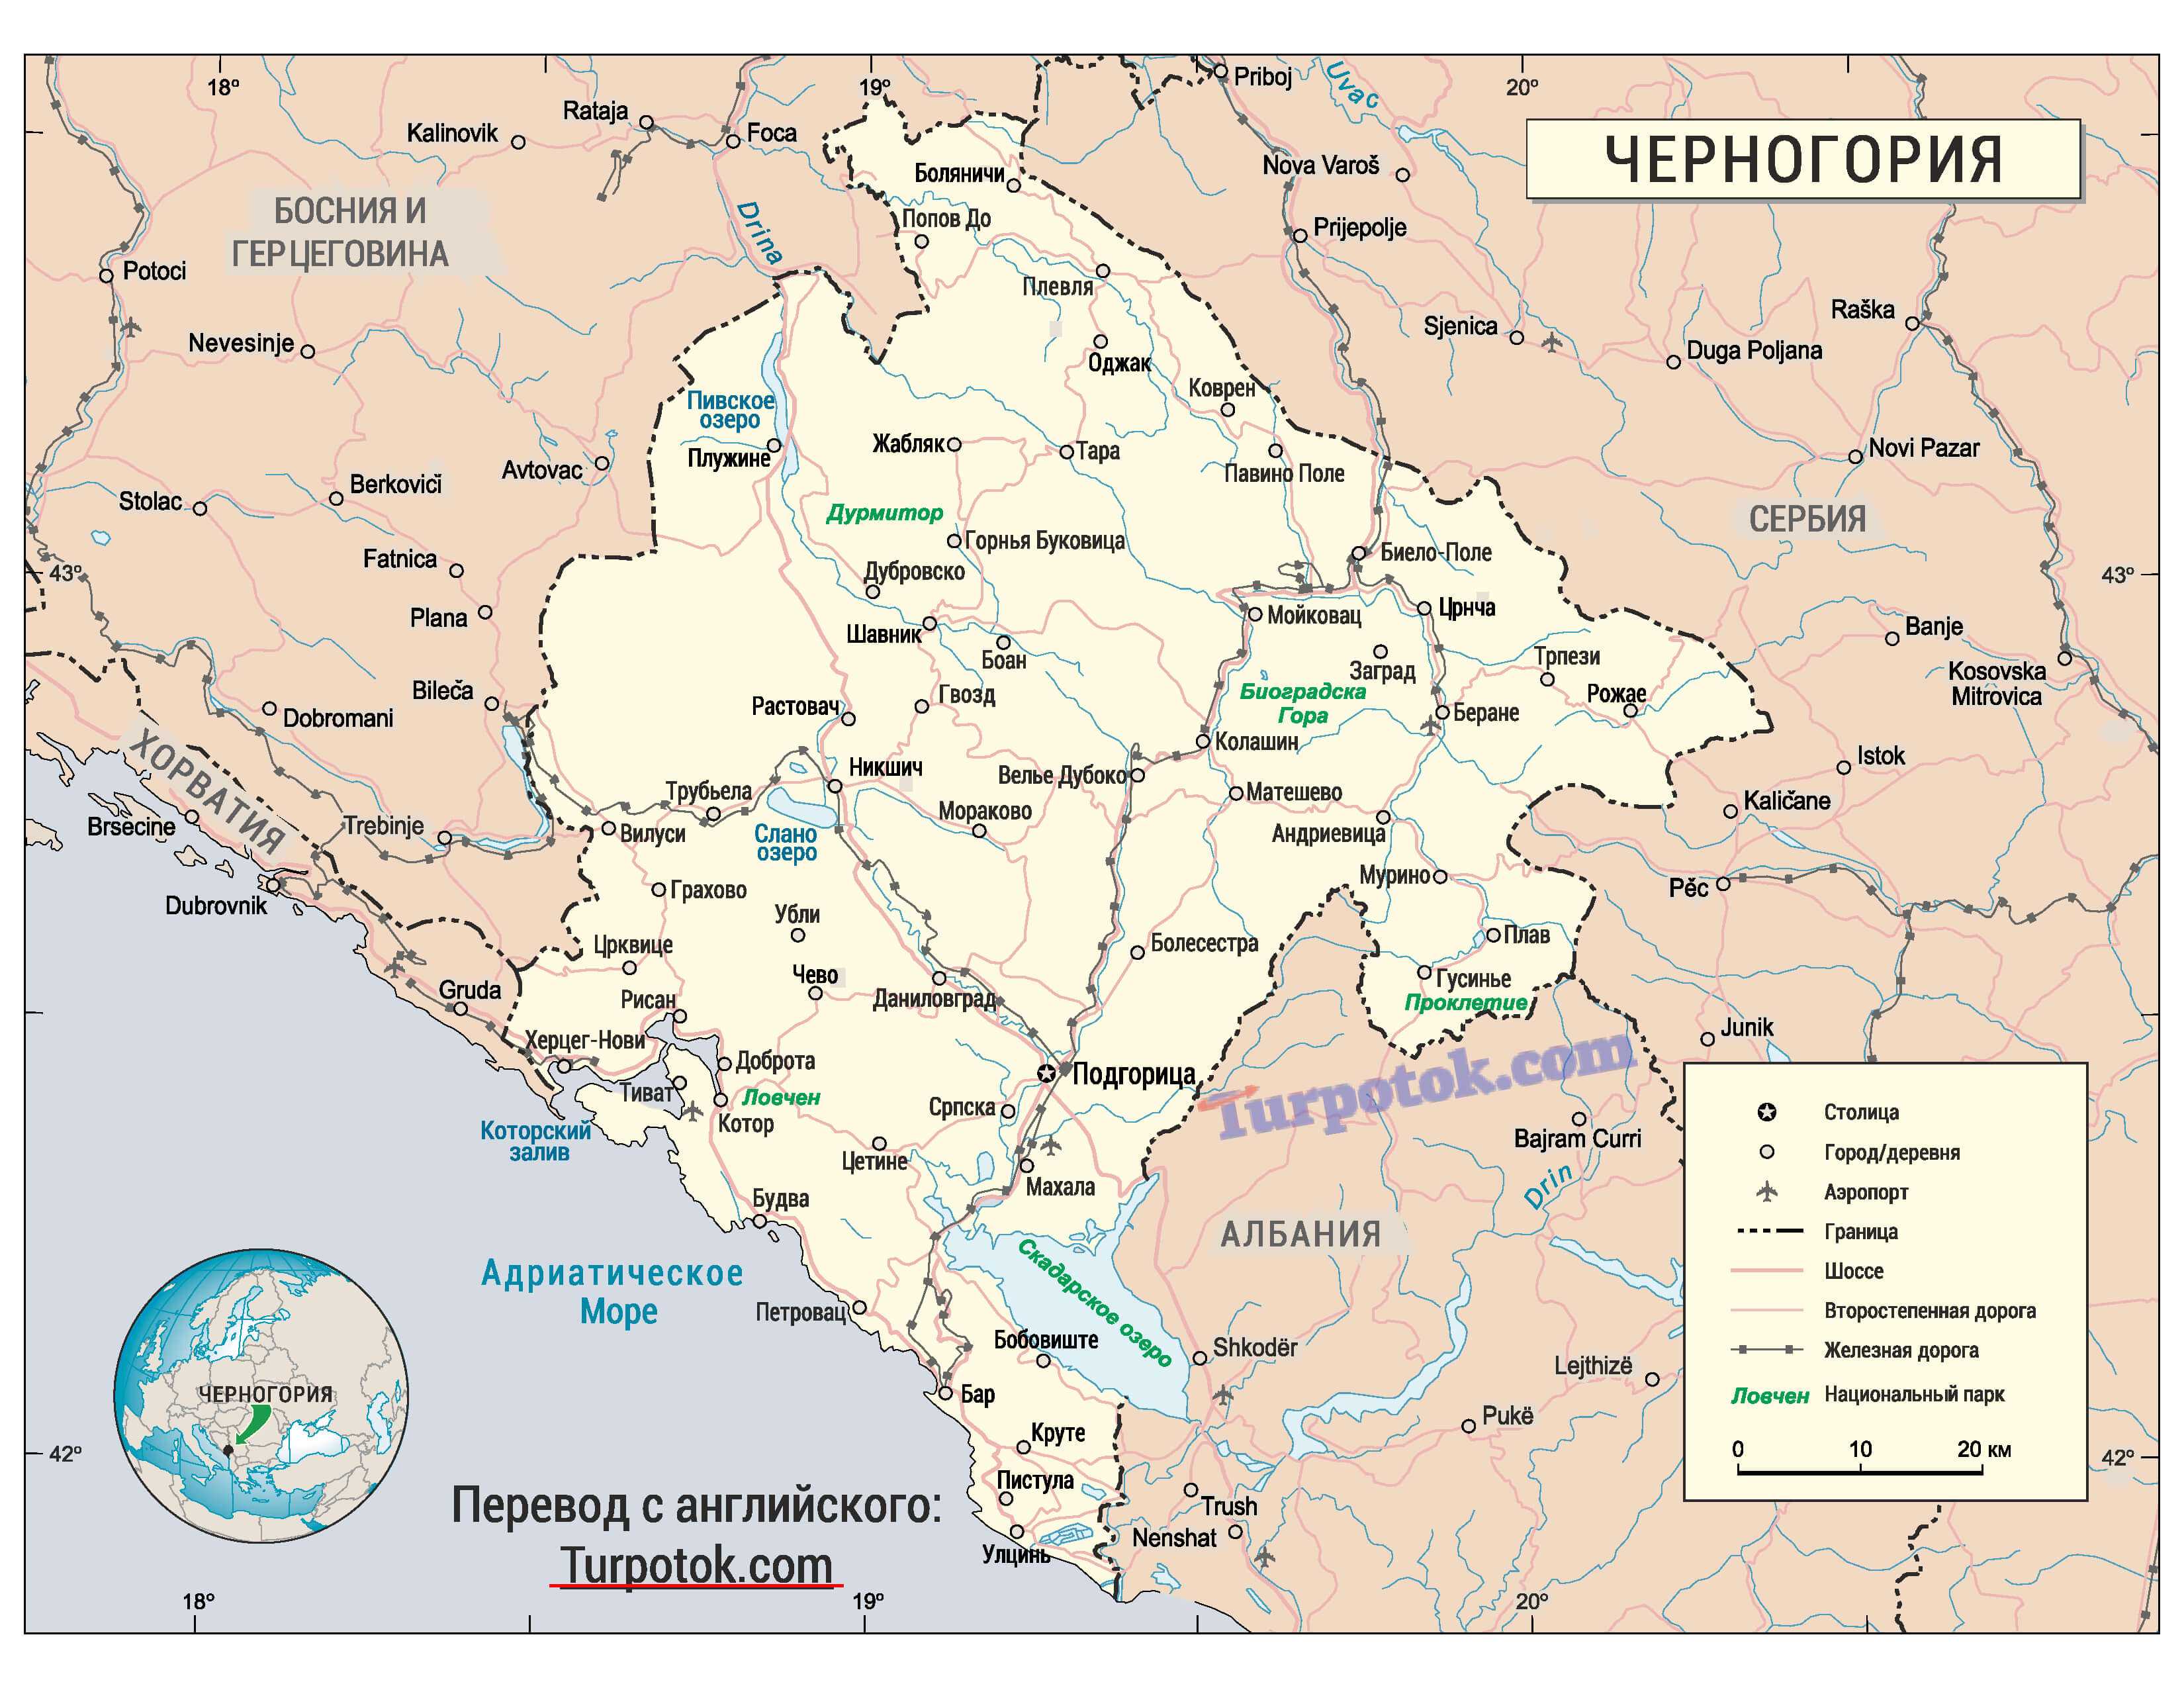 Распад югославии причины и история раздела территории